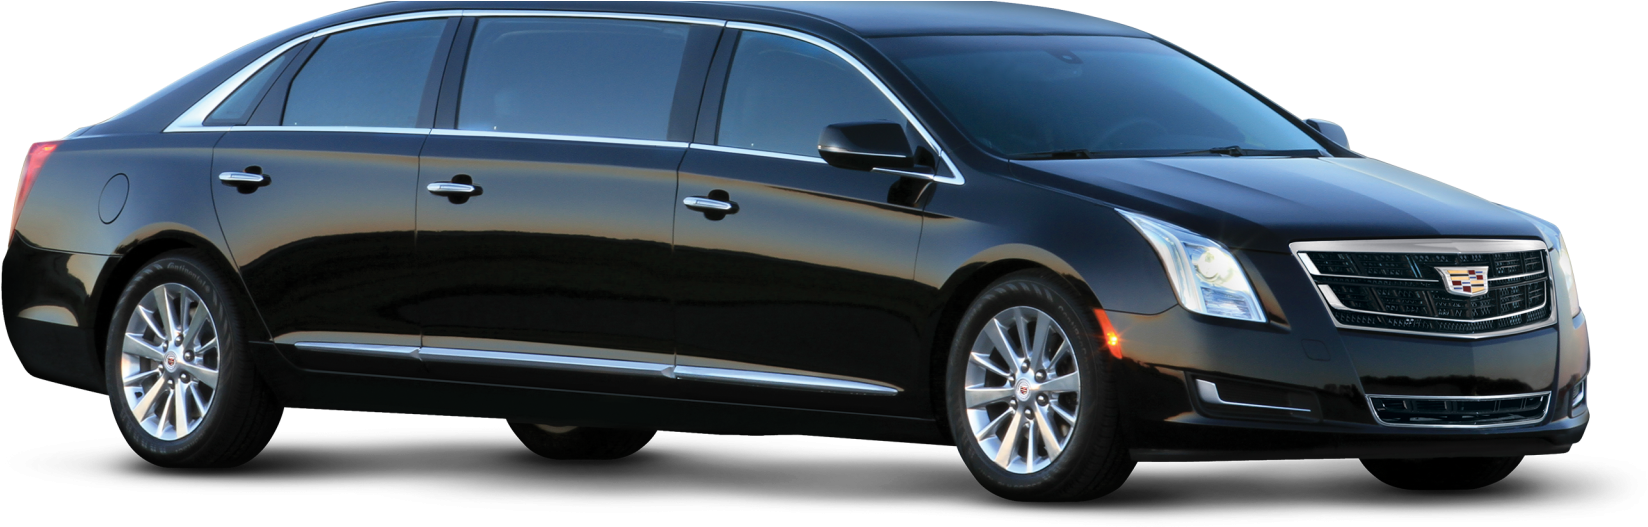 2016 Cadillac Xts Ambassador - 6 Door Car (1920x527), Png Download